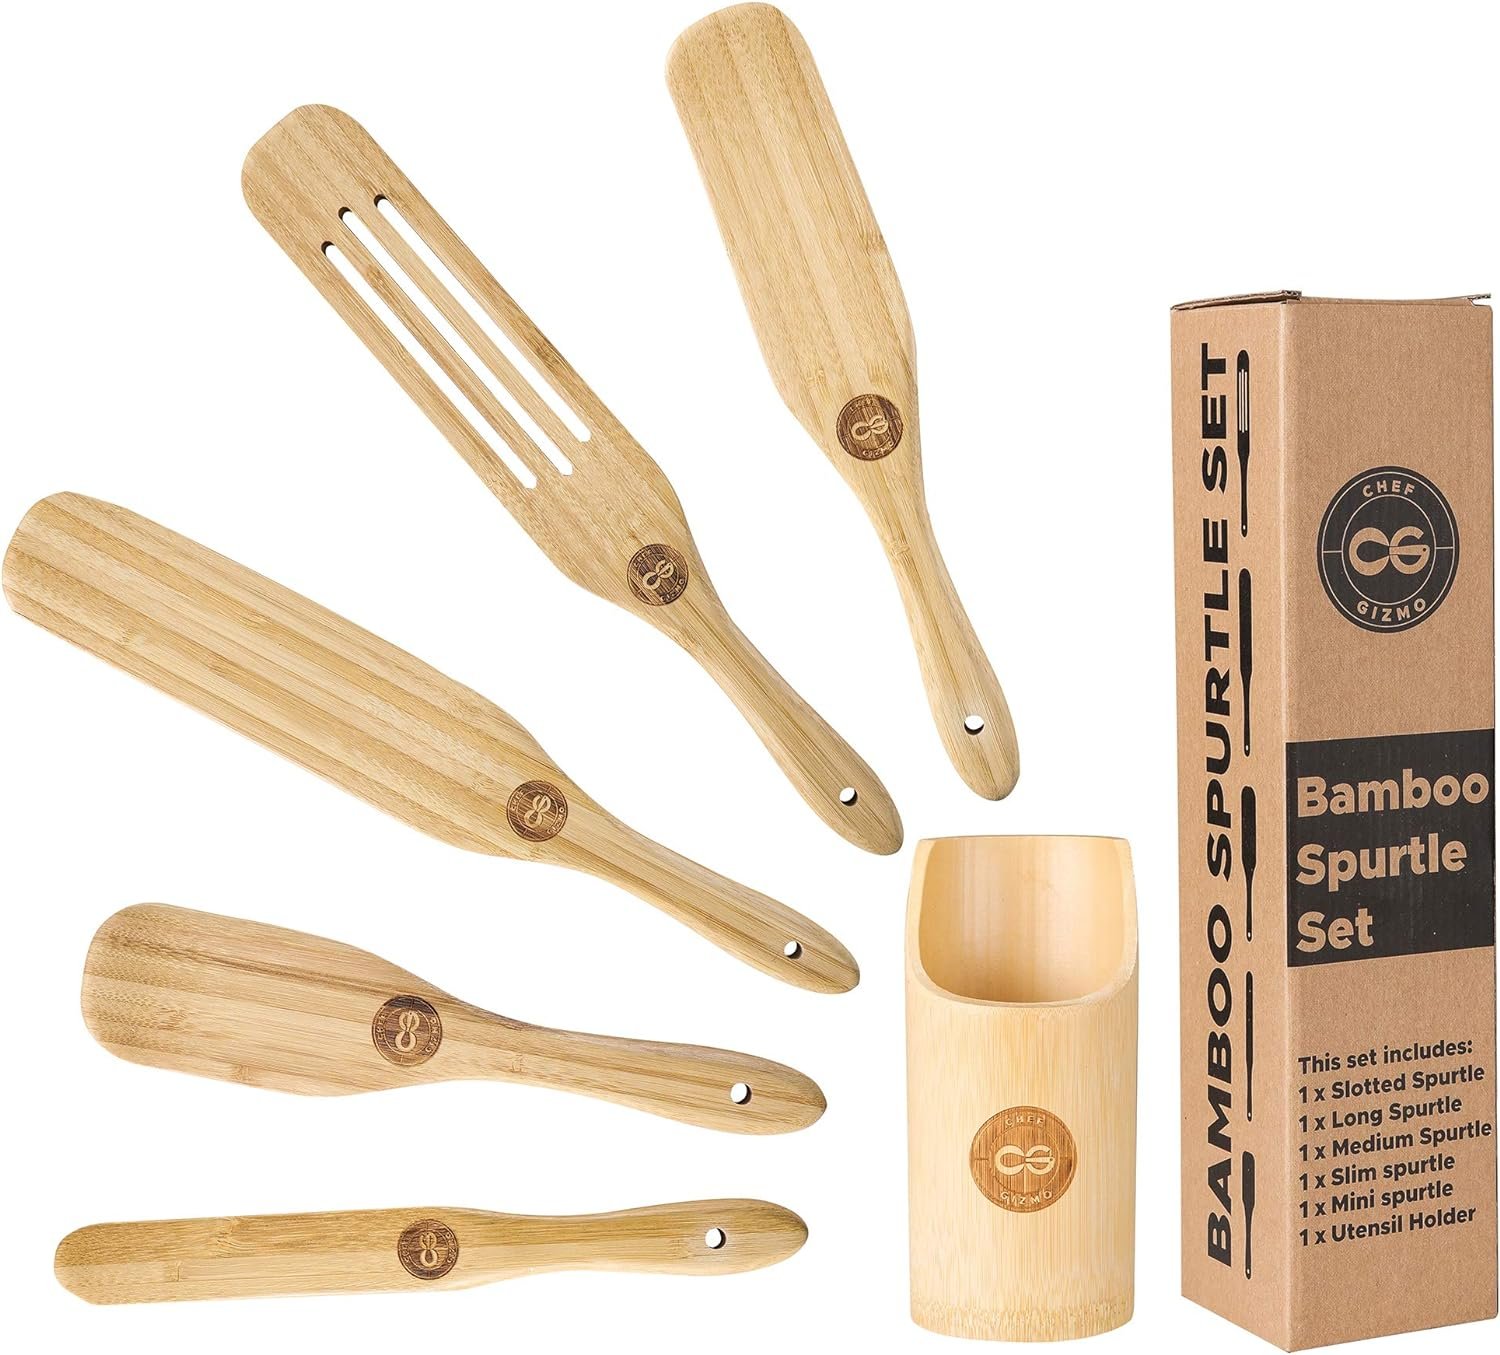 Spurtle Set Bamboo Spurtles Kitchen Tools - Spurtle Wooden cooking Utensils set - Nonstick wooden Cooking Utensils- Wooden Spurtle Set 5 spatula with Utensil holder-Stir, Scrape, Smash.